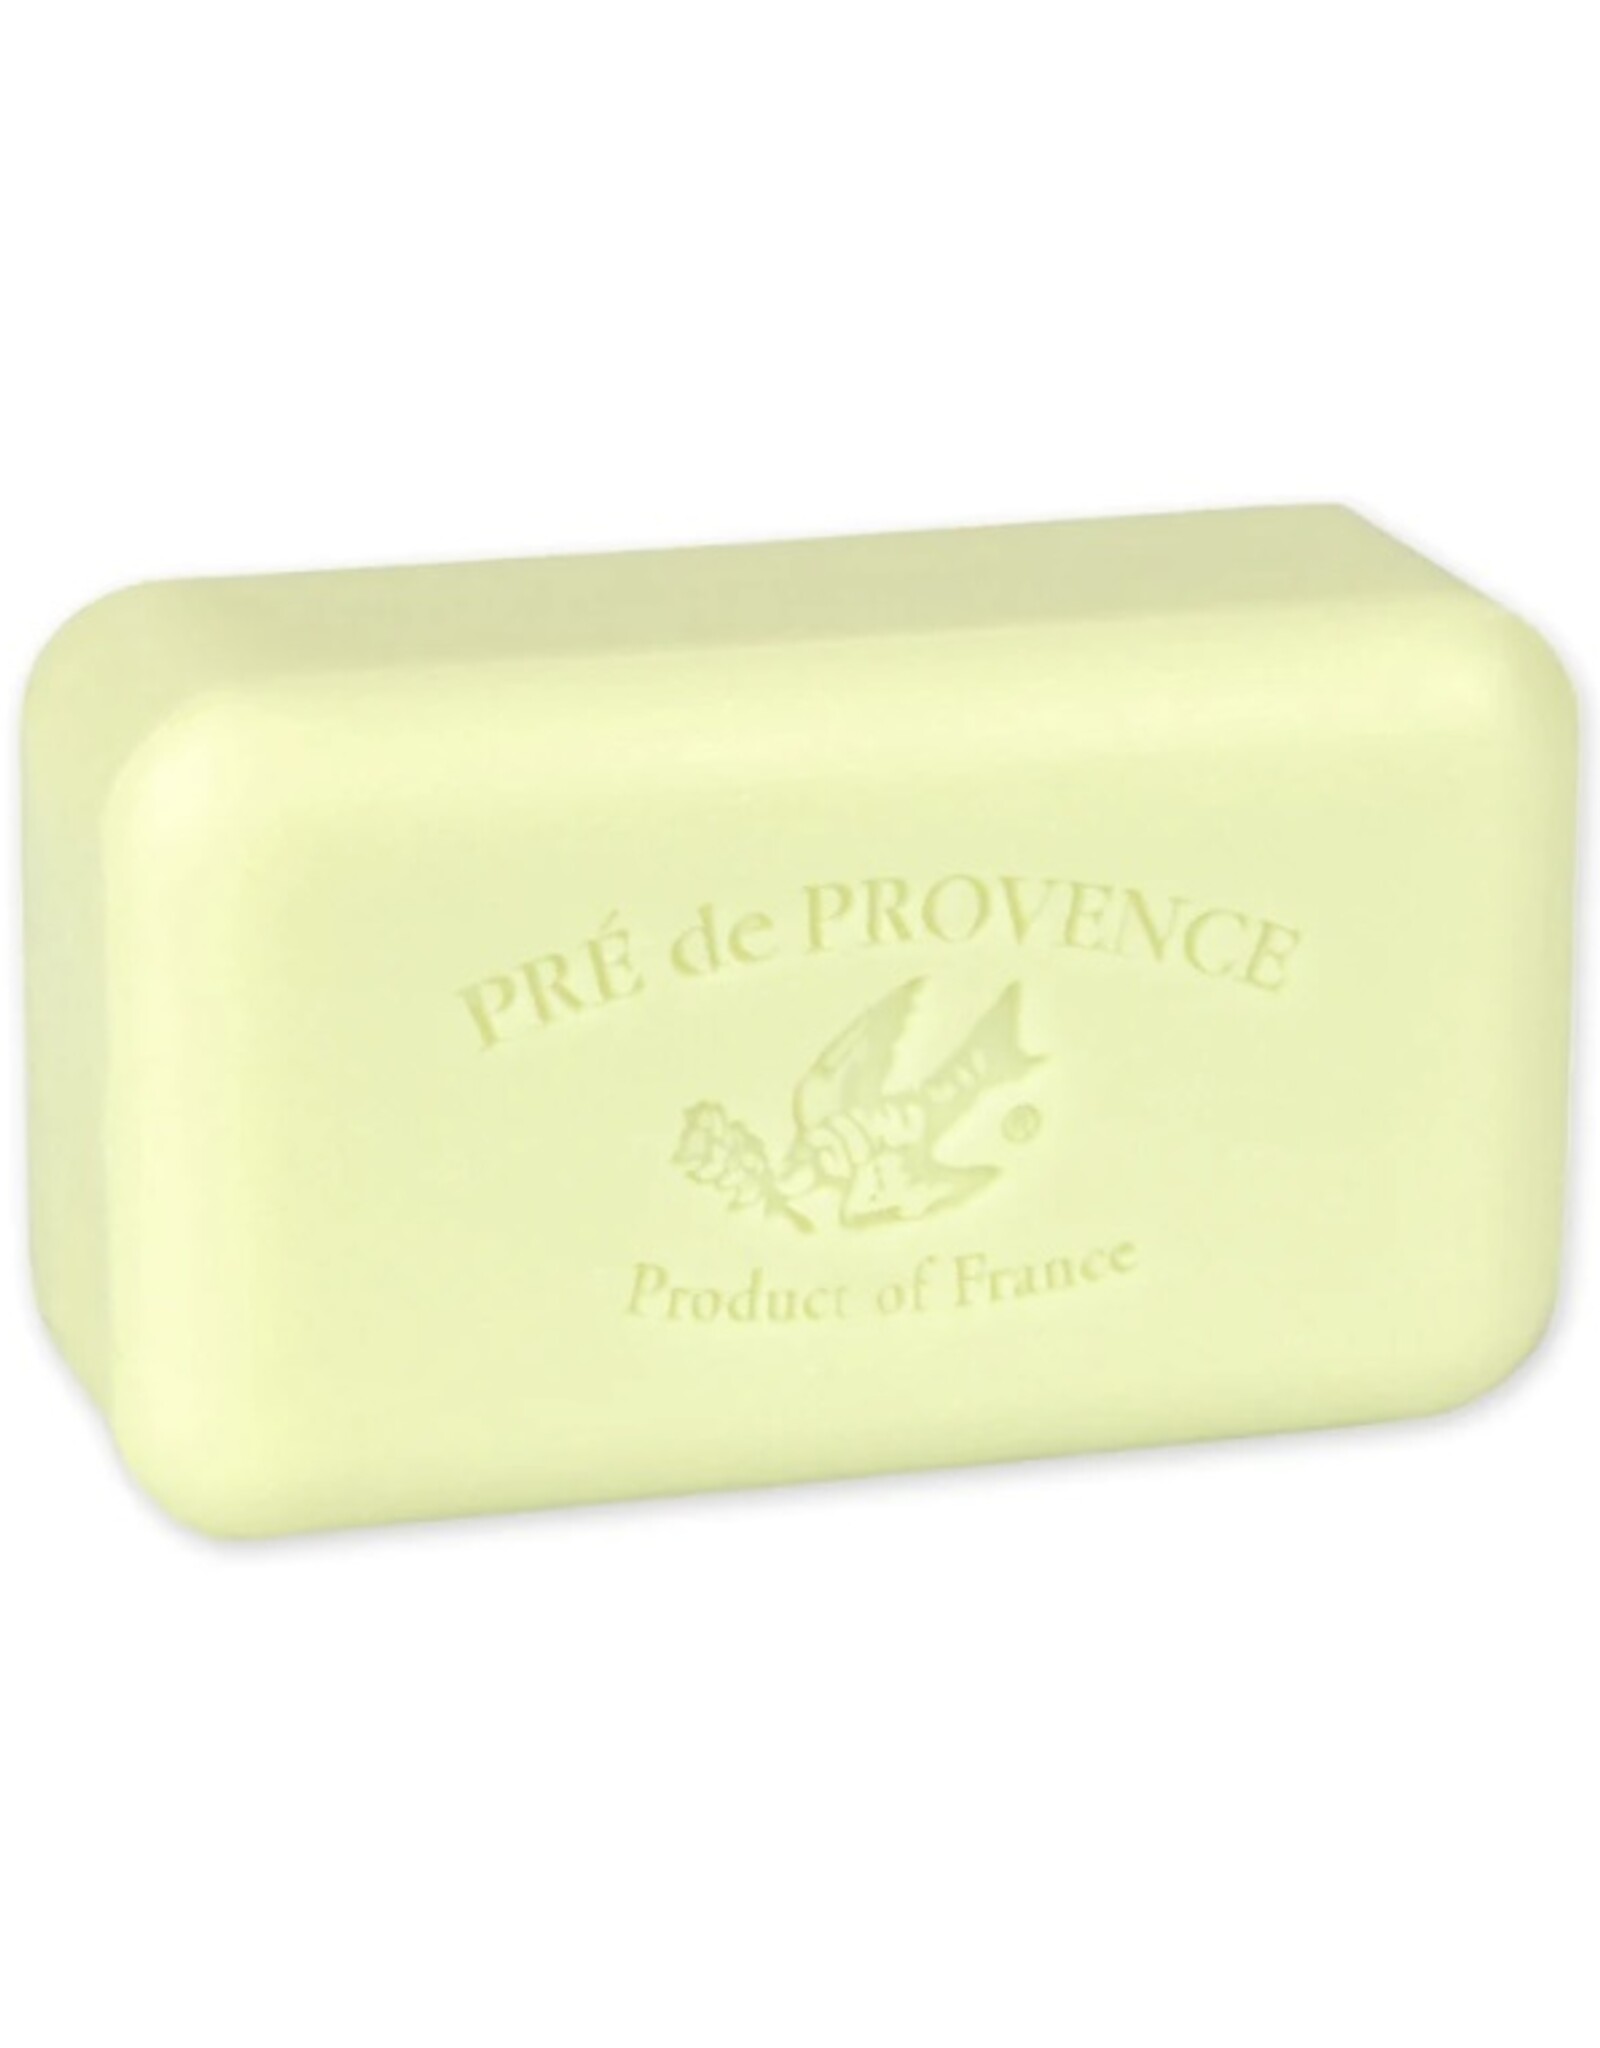 Pre de Provence large soap 250g